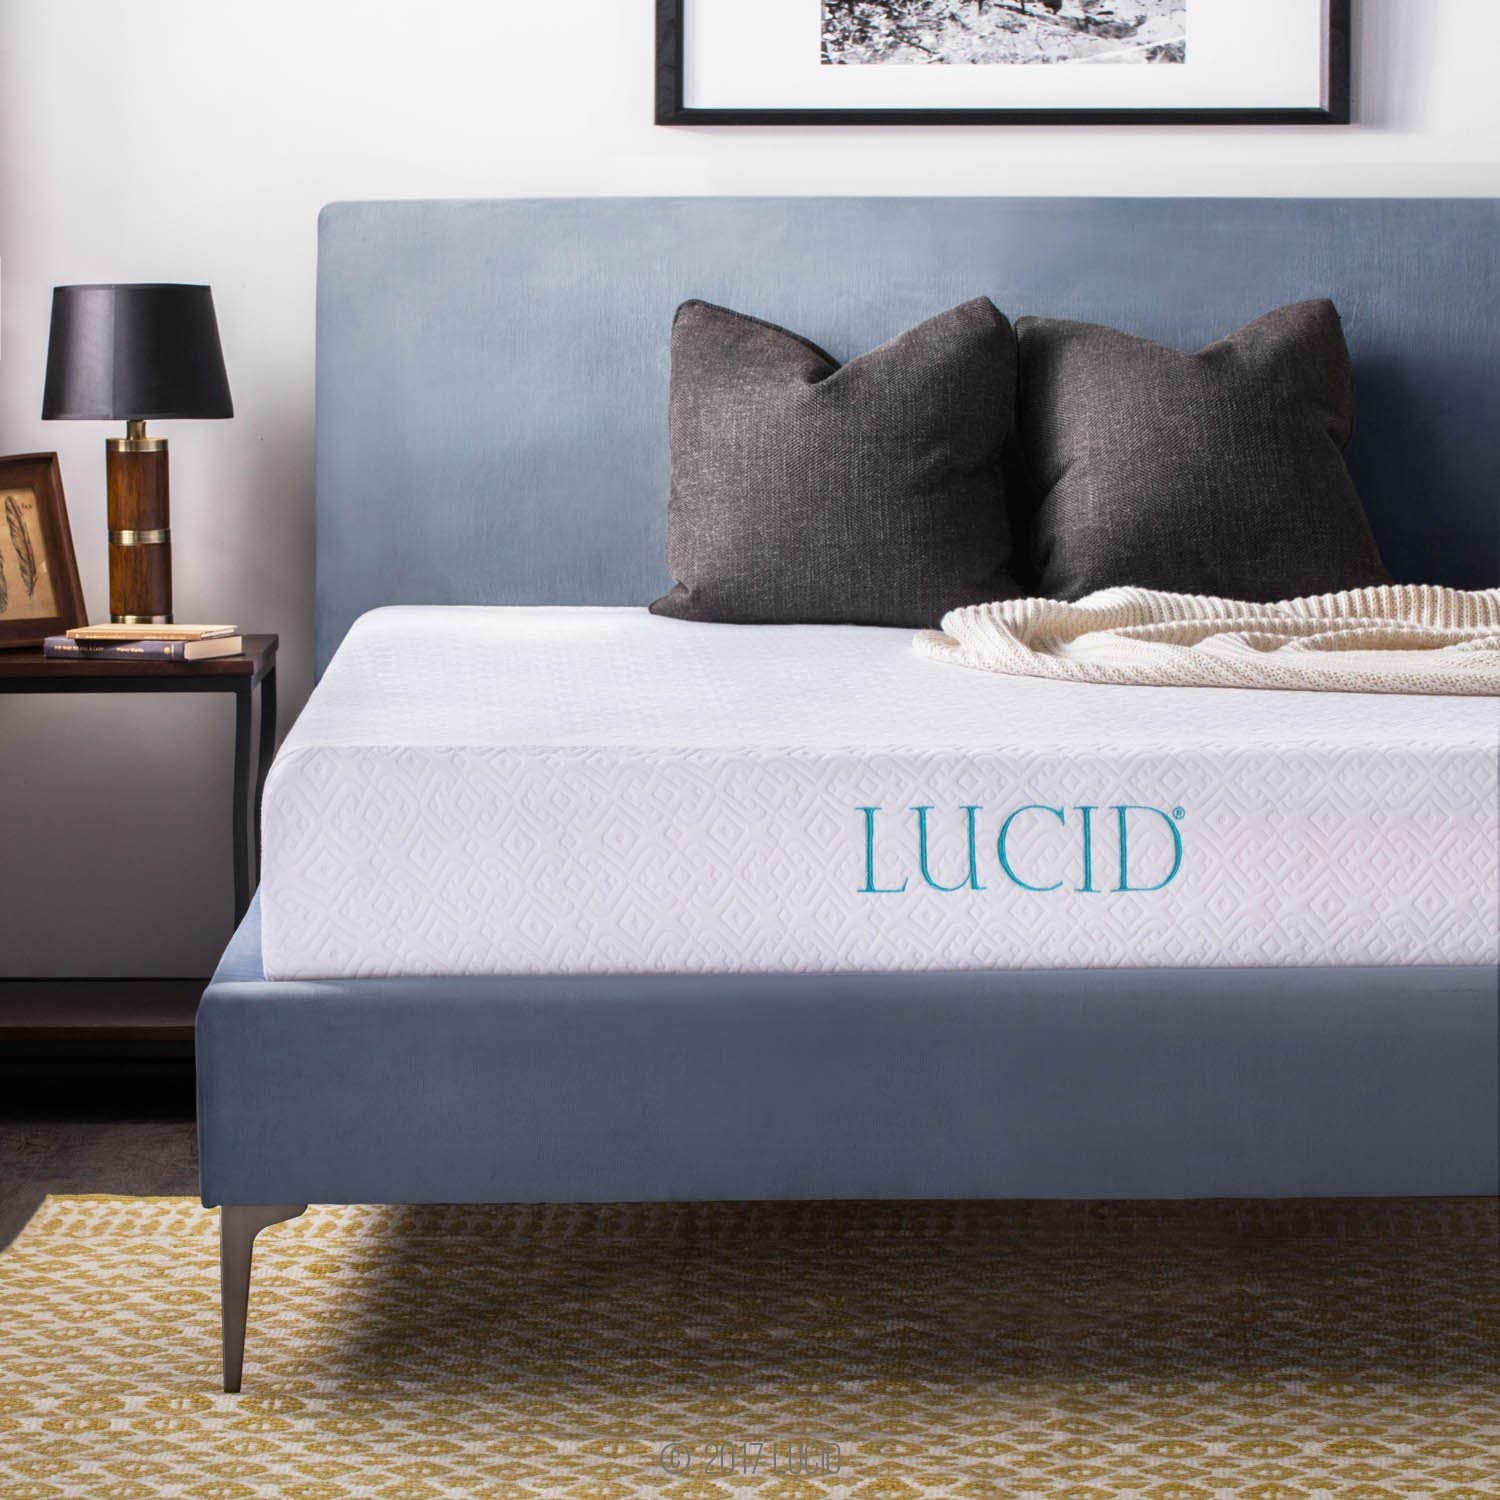 Lucid 10-inch gel memory foam mattresses from $135